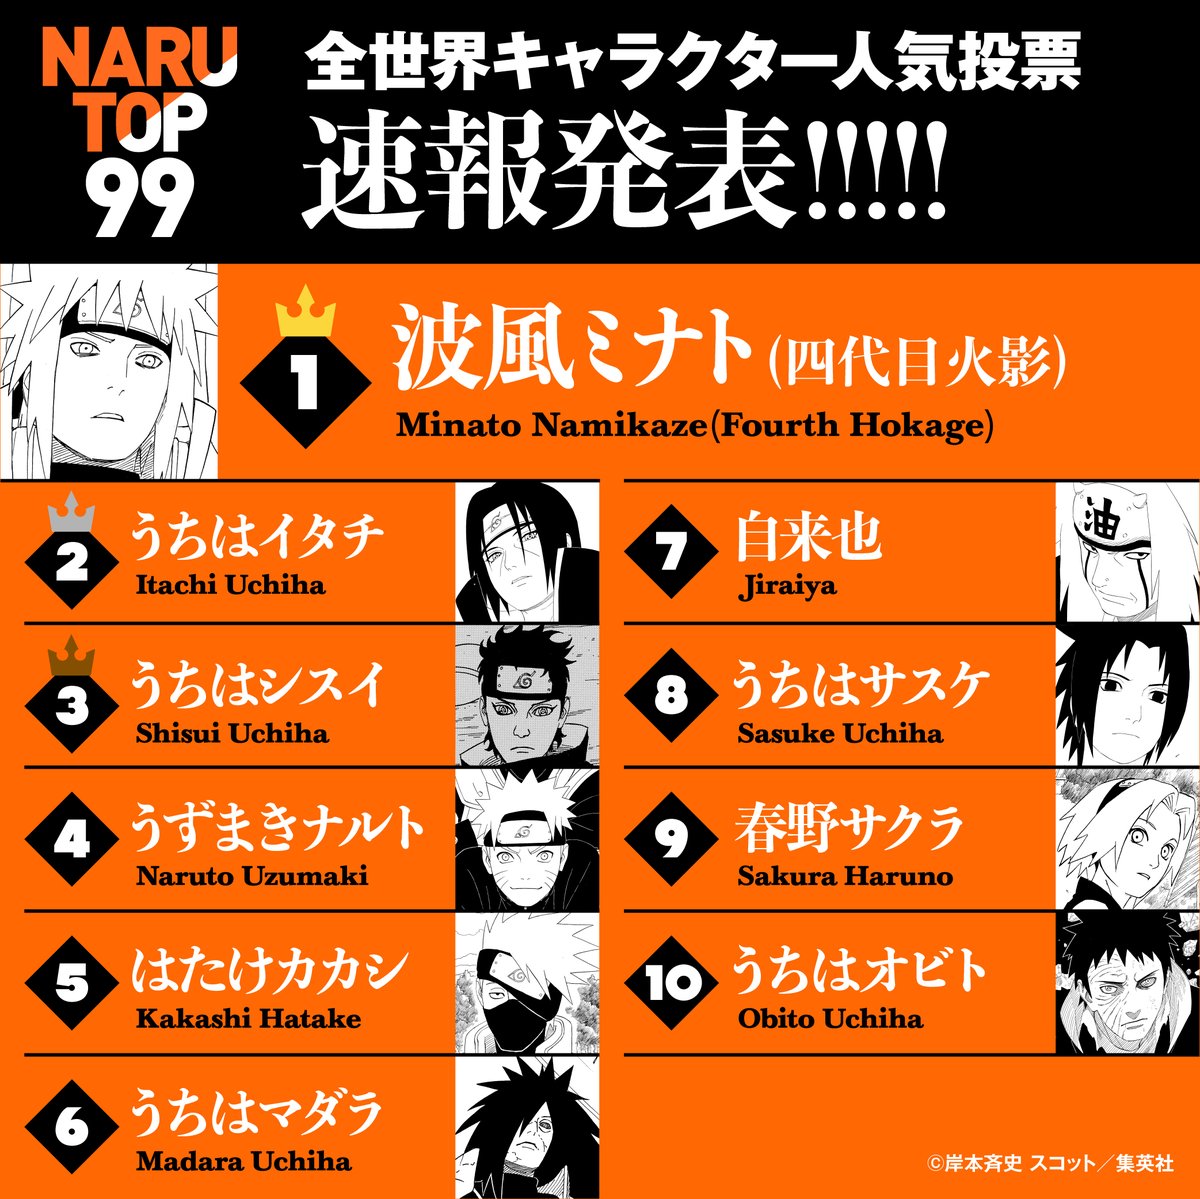 Parcial da votação de popularidade global de Naruto CHOCA FkoD9POVUAAI-cZ?format=jpg&name=medium